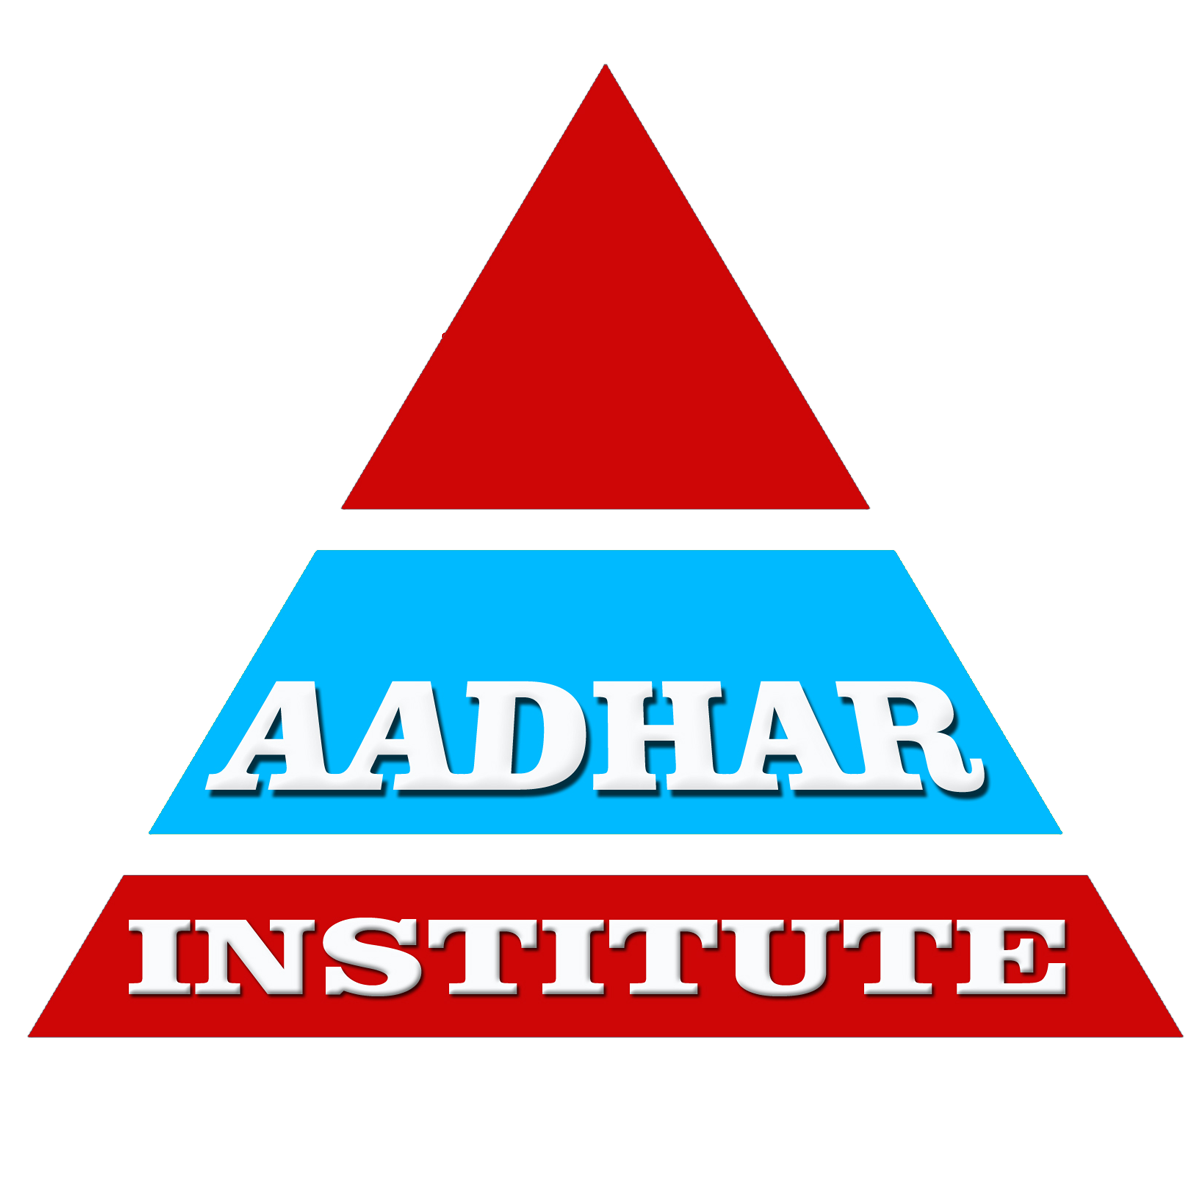 Aadhar Institute|Colleges|Education